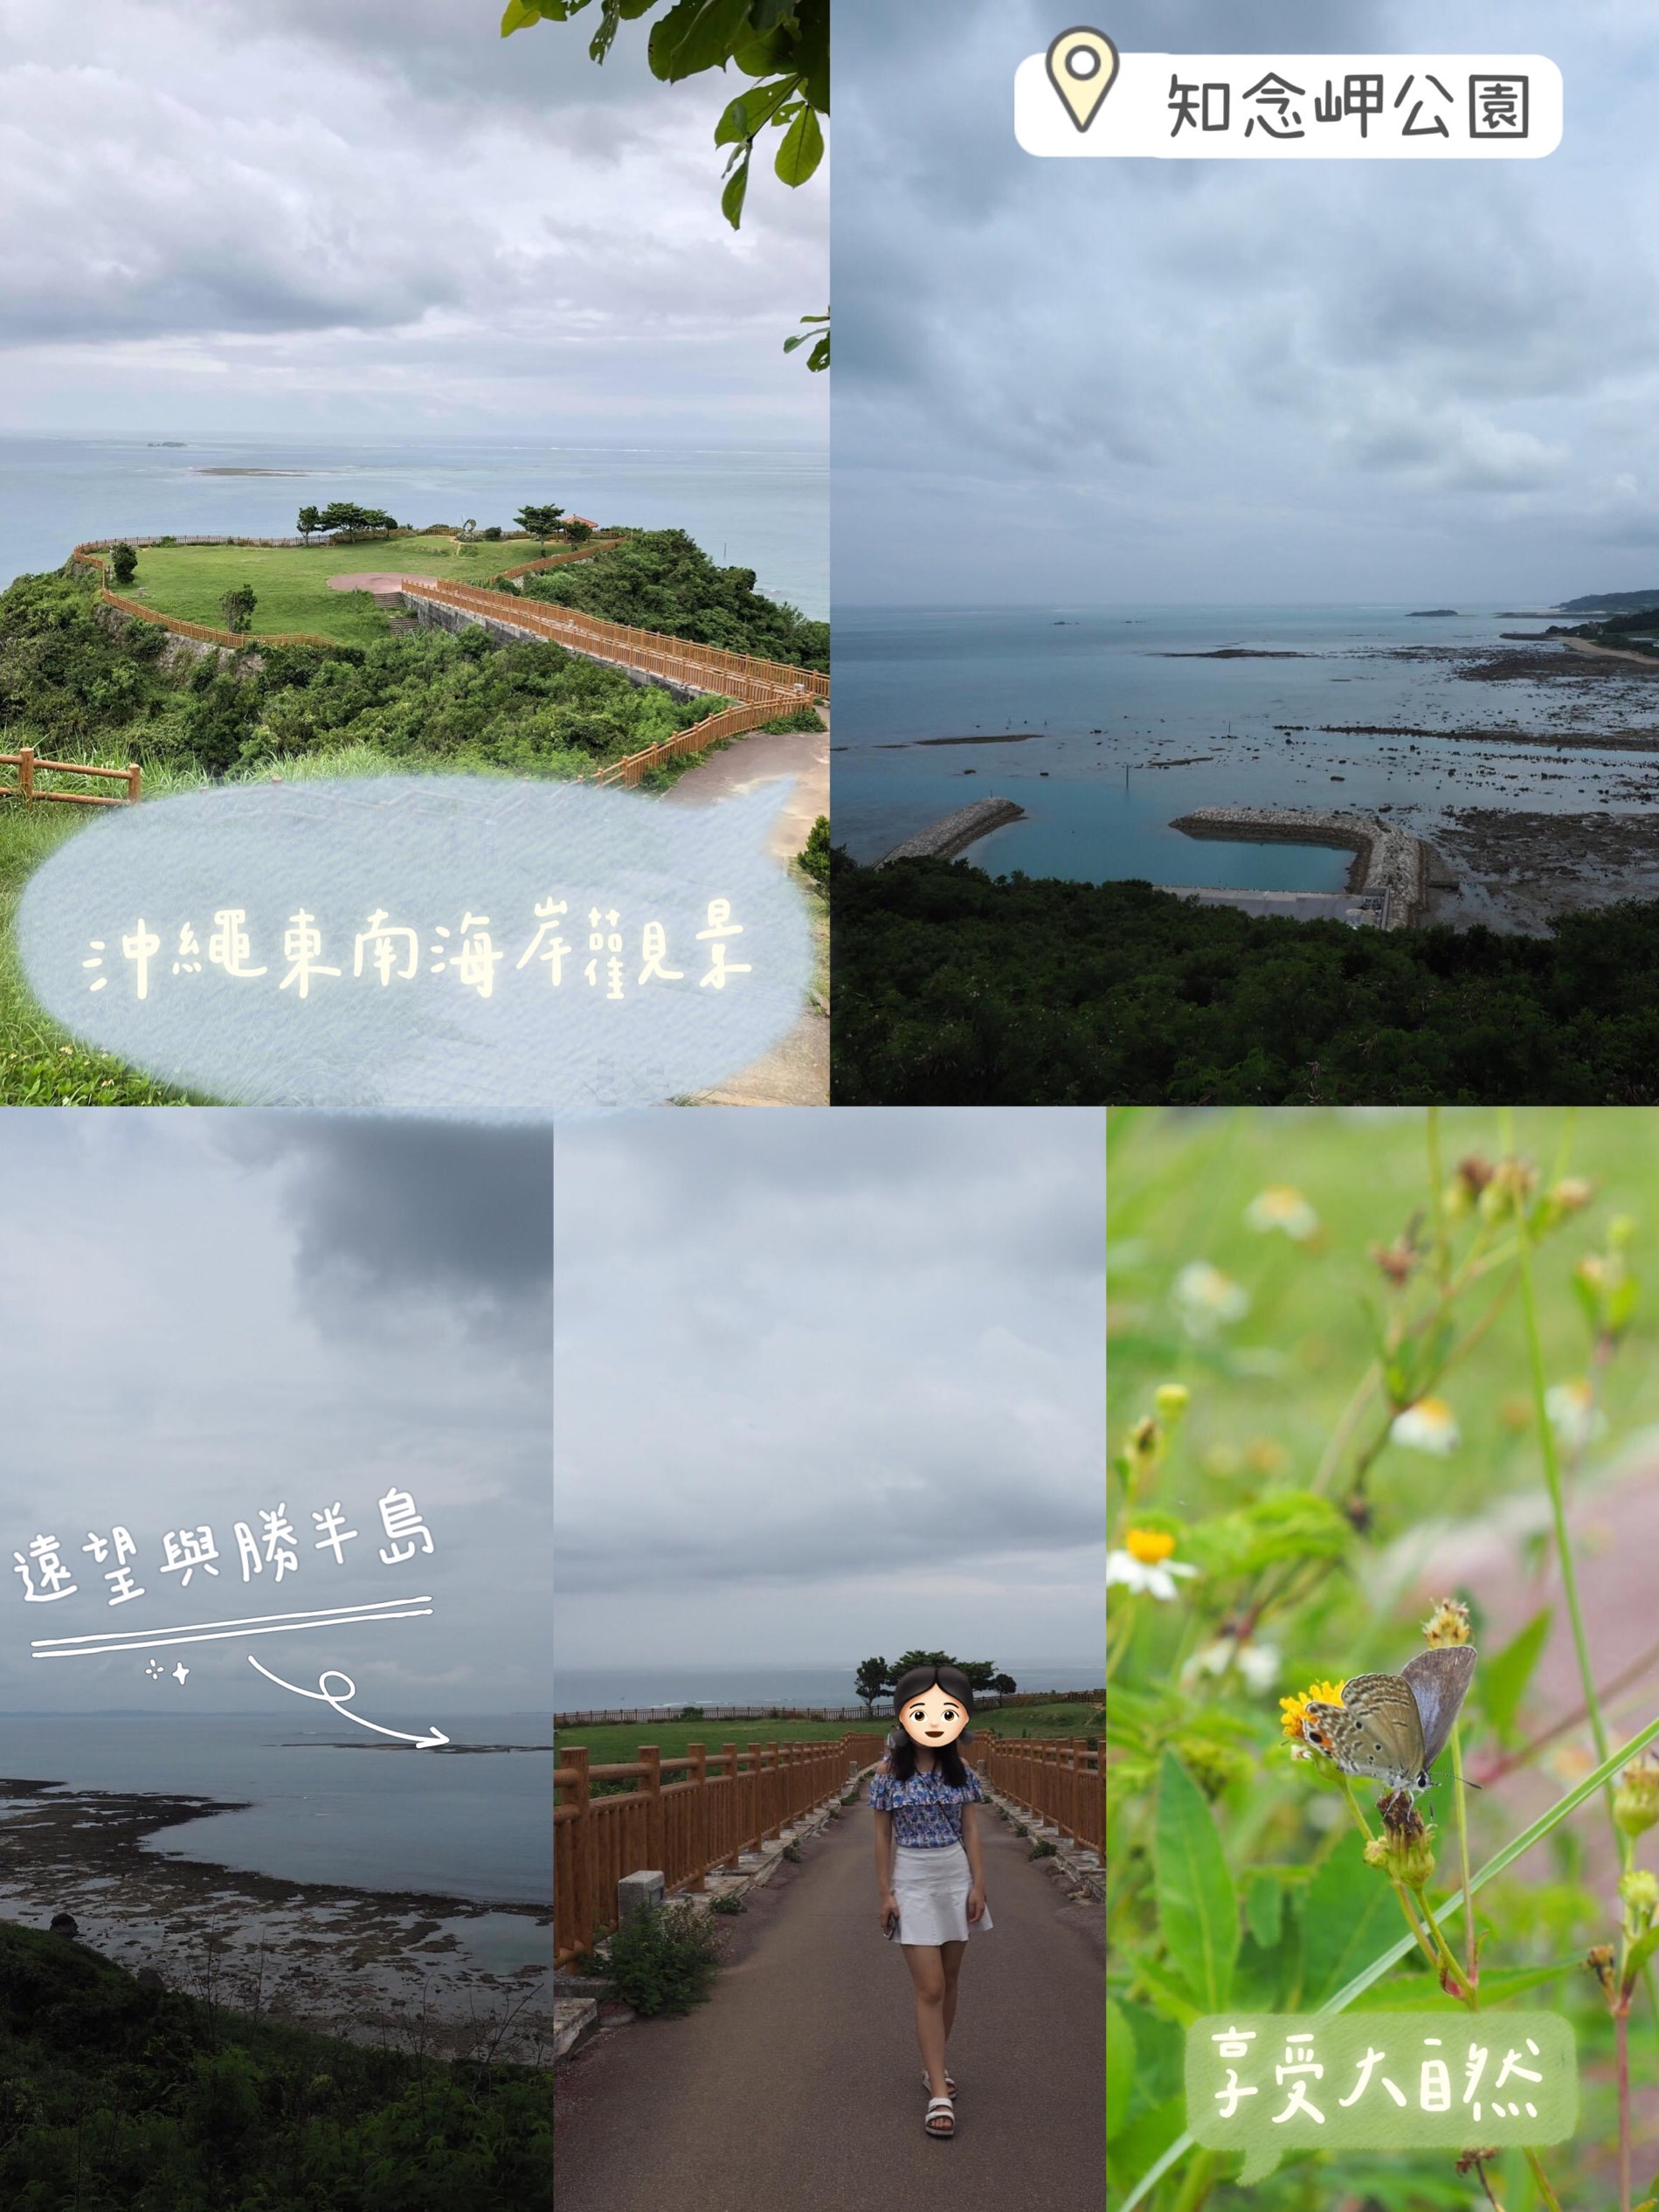 冲绳东南海岸知念岬公园‼️欣赏唯美海岸线❤️远望附近的岛屿‼️